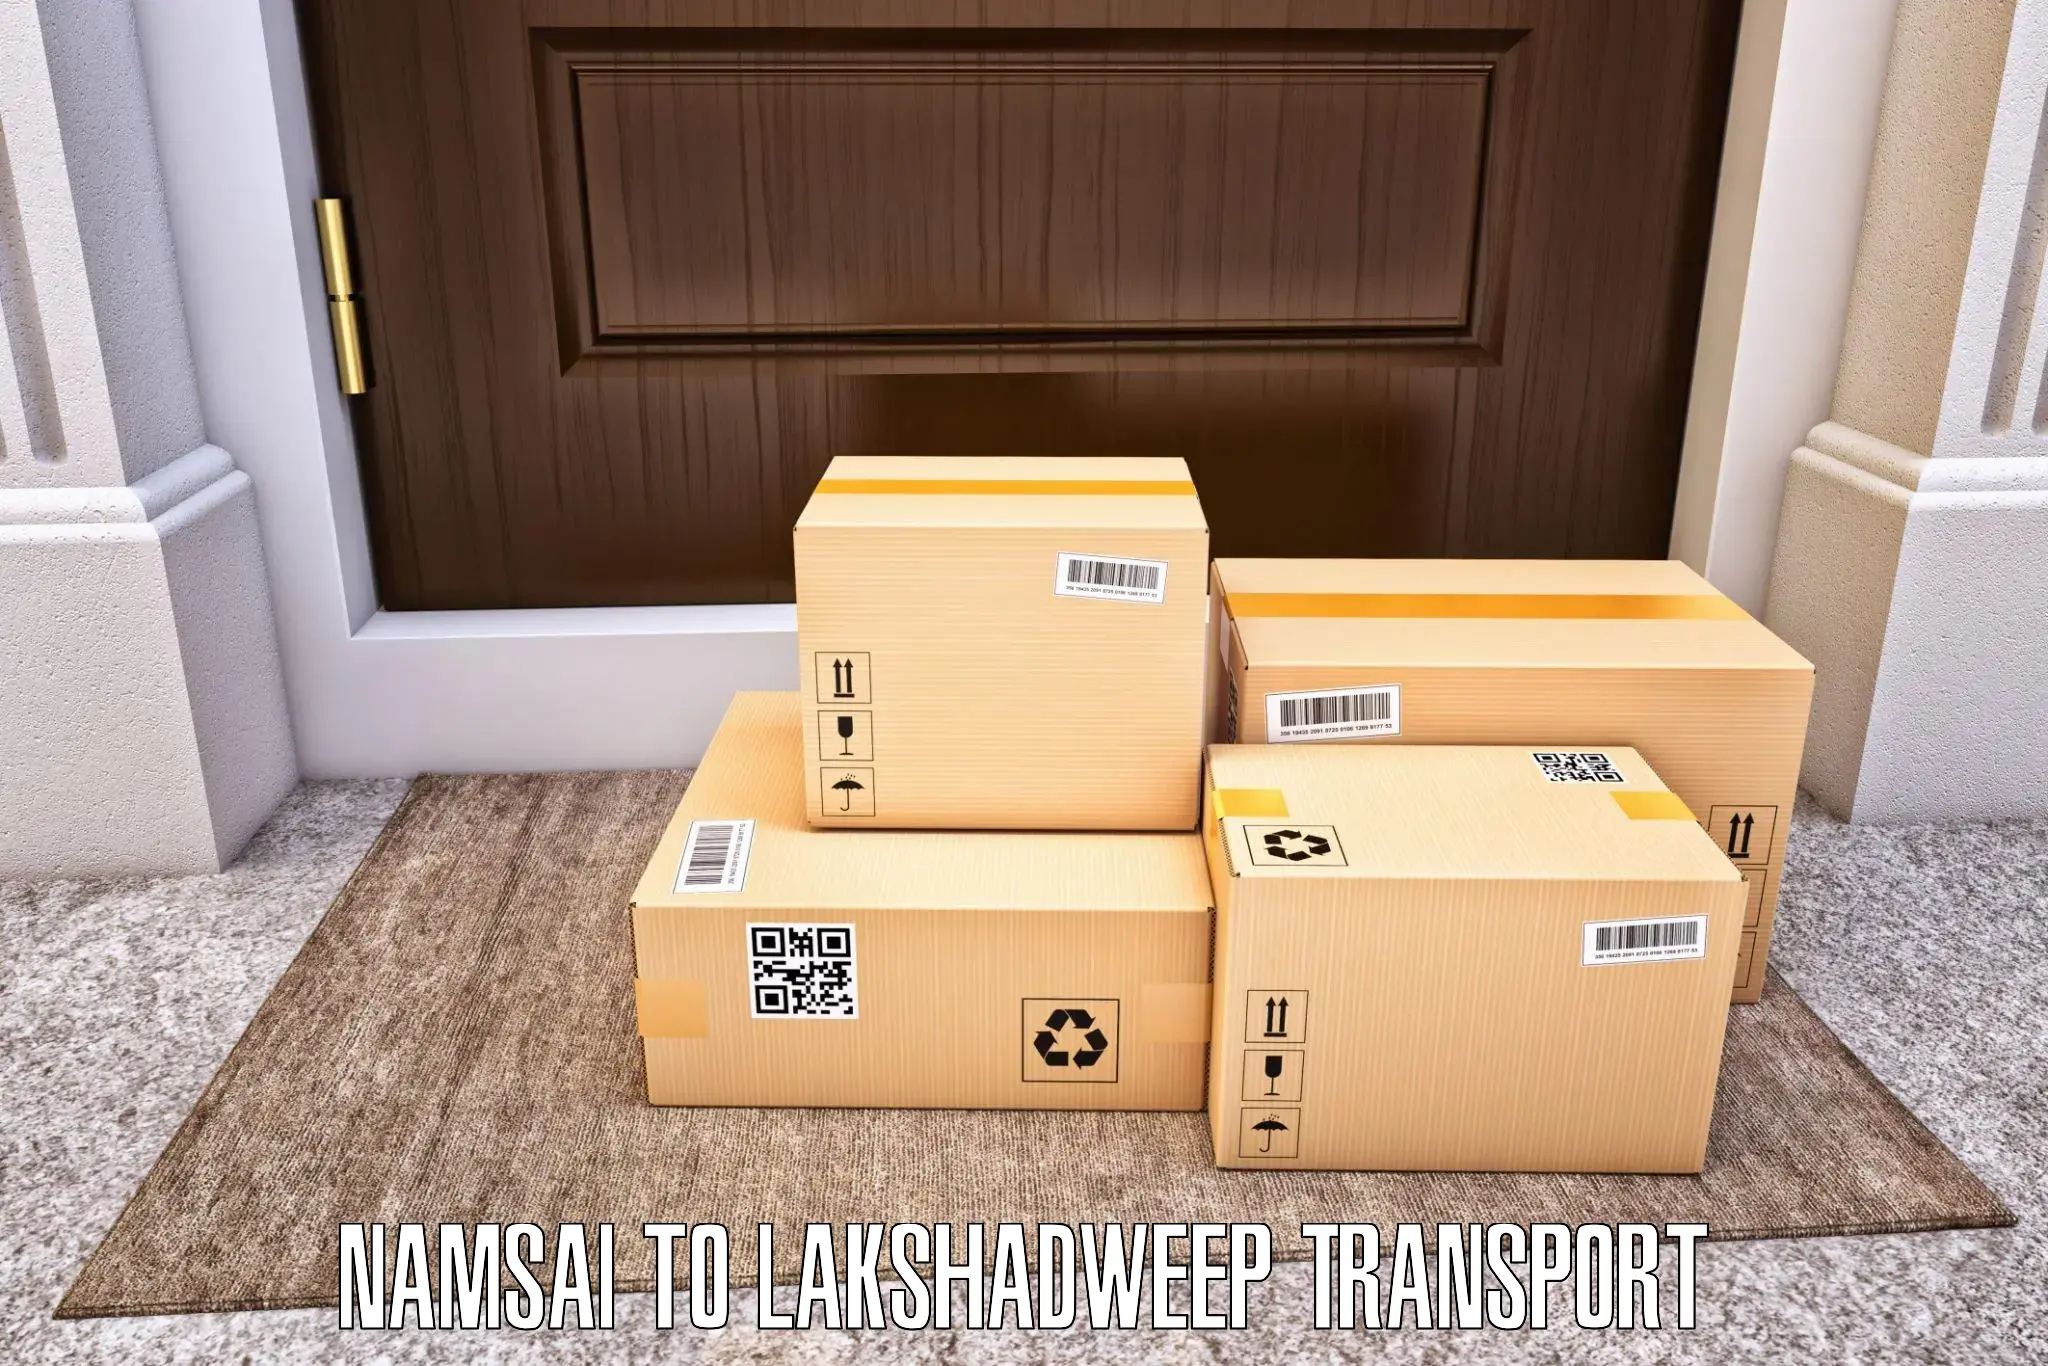 Luggage transport services Namsai to Lakshadweep